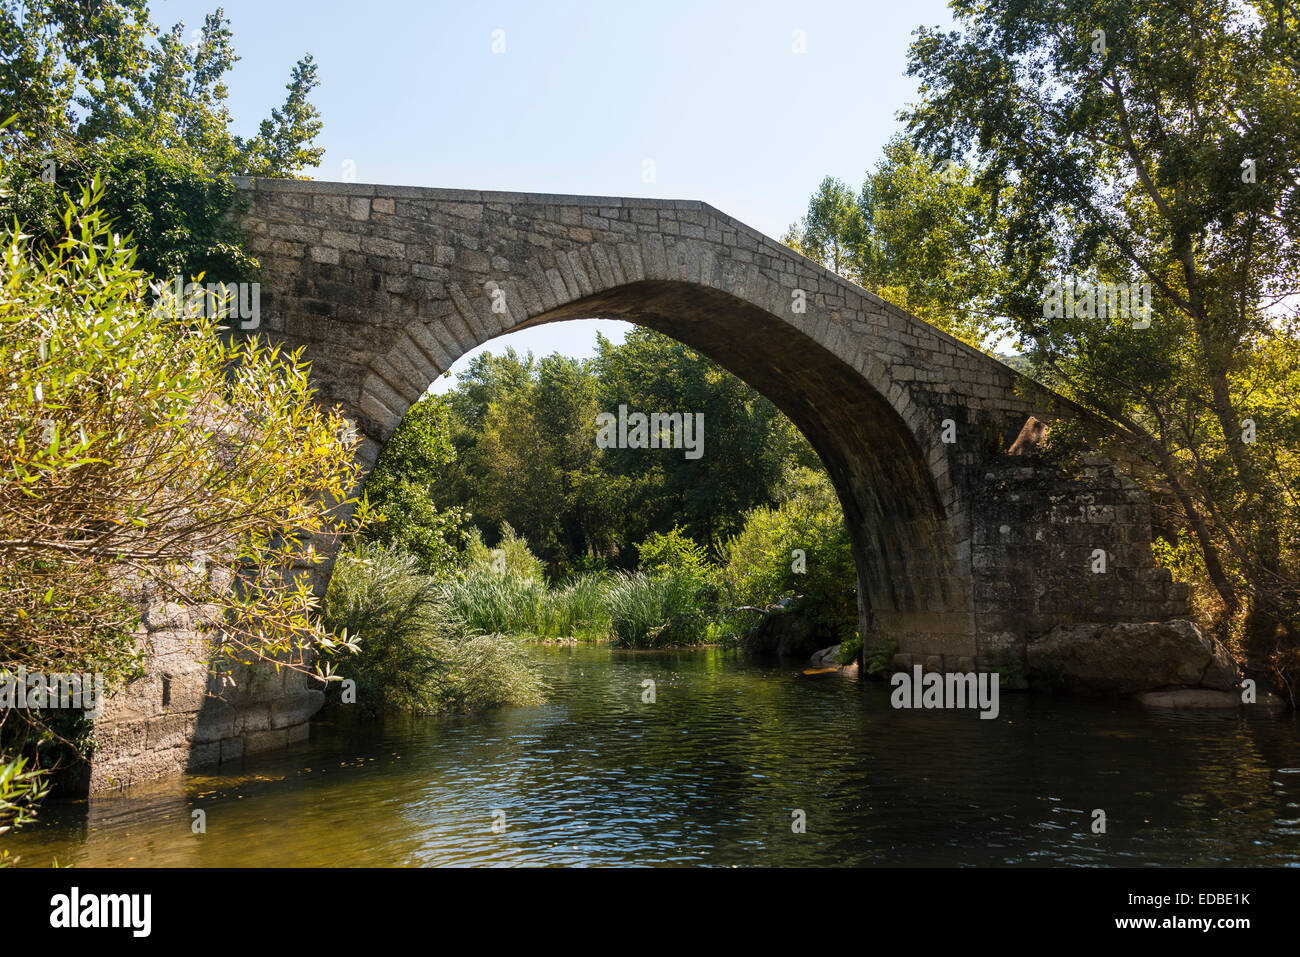 Spin'a Cavallu, pont génois, vallée de la Rizzanese, près de Sartène, Corse-du-Sud, Corse, France Banque D'Images